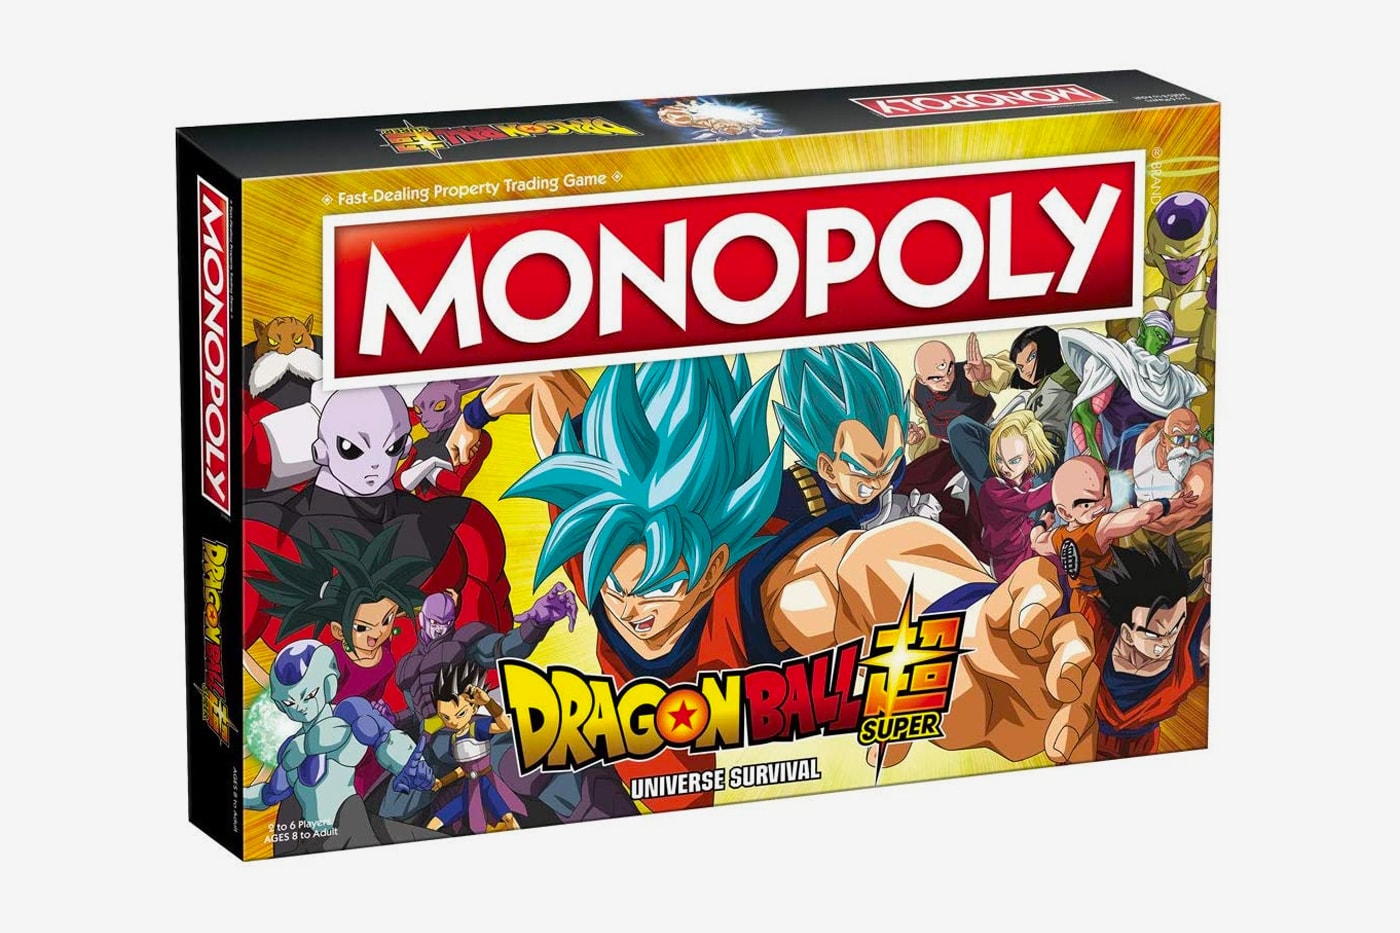 Monopoly 推出全新特別版《Dragon Ball》主題大富翁桌上遊戲